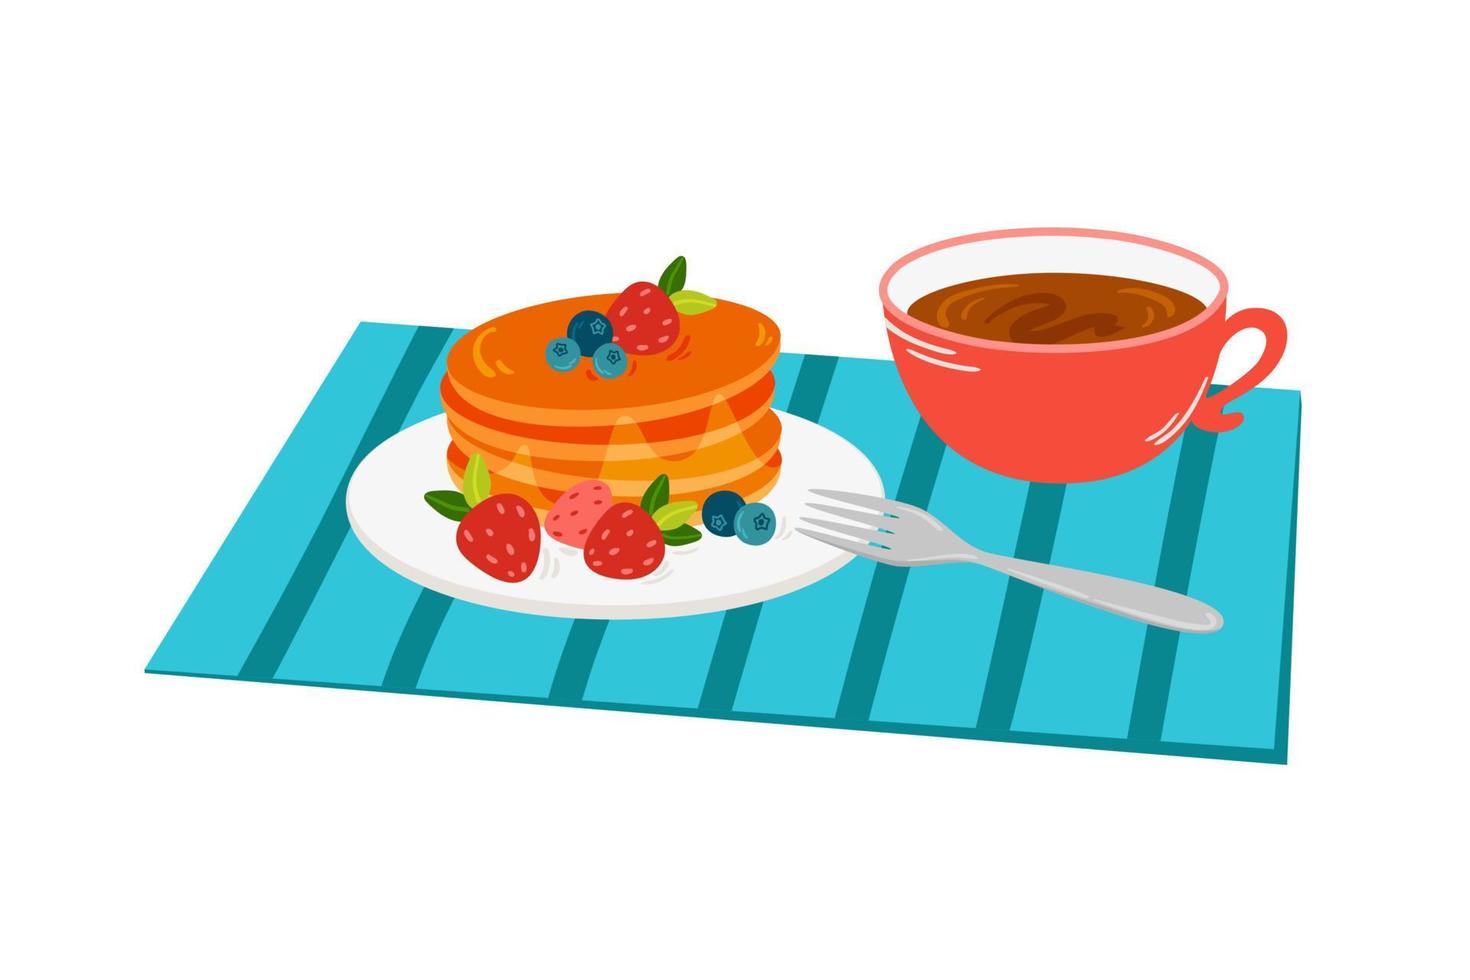 café da manhã - xícara de chá, pilha de panquecas caseiras com calda de mel, morangos, mirtilos vetor